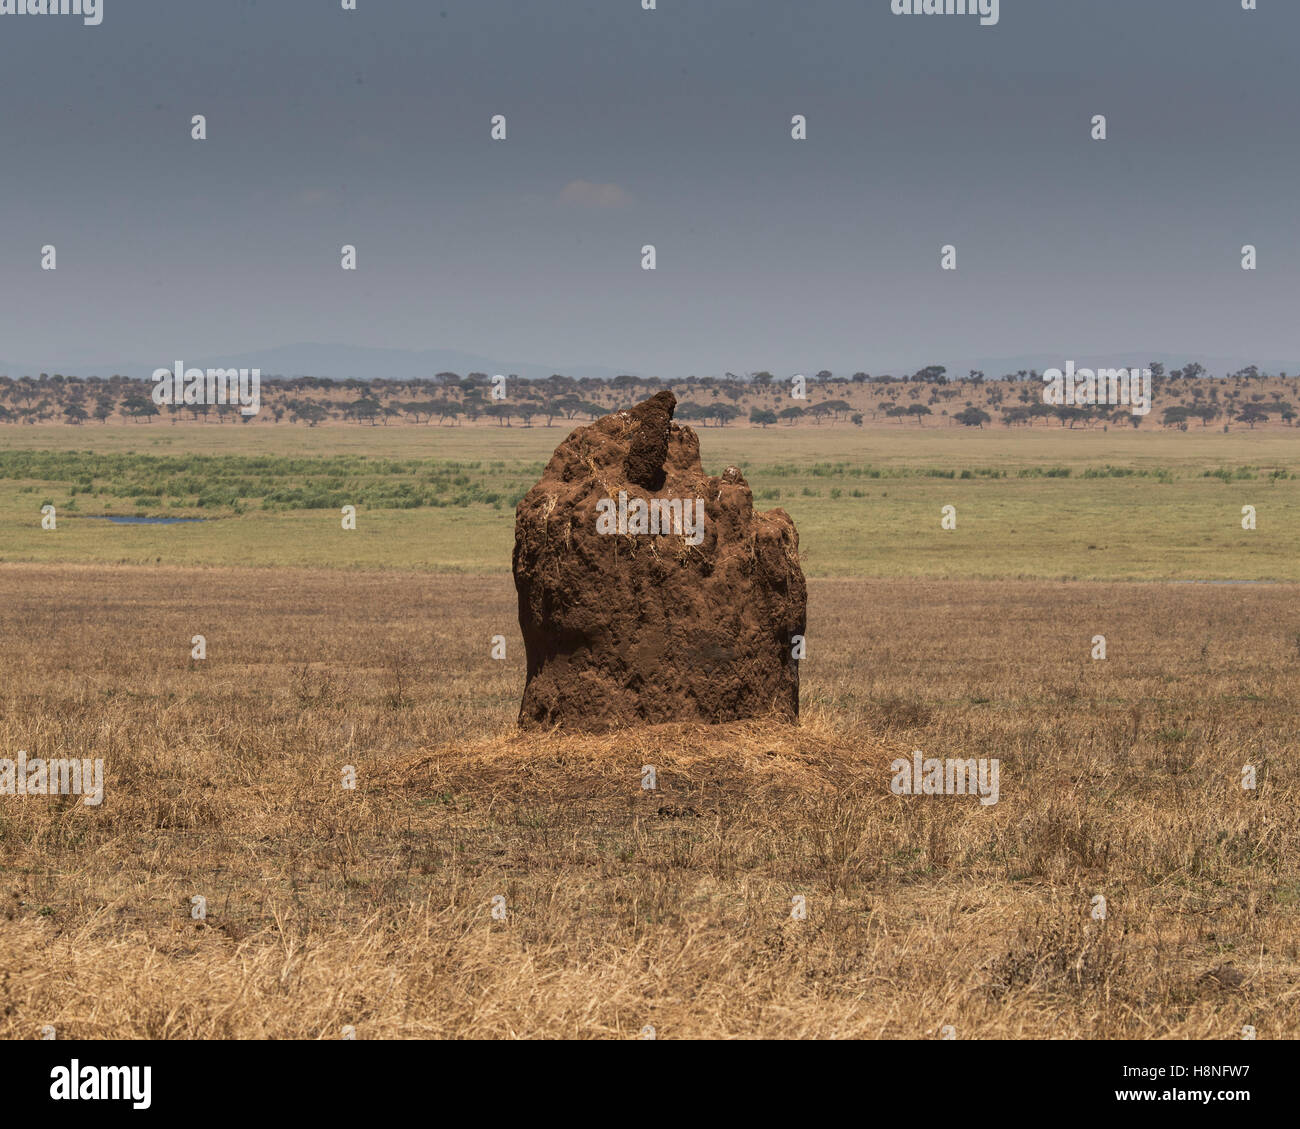 Termite mound in Tarangire National Park, Tanzania Stock Photo